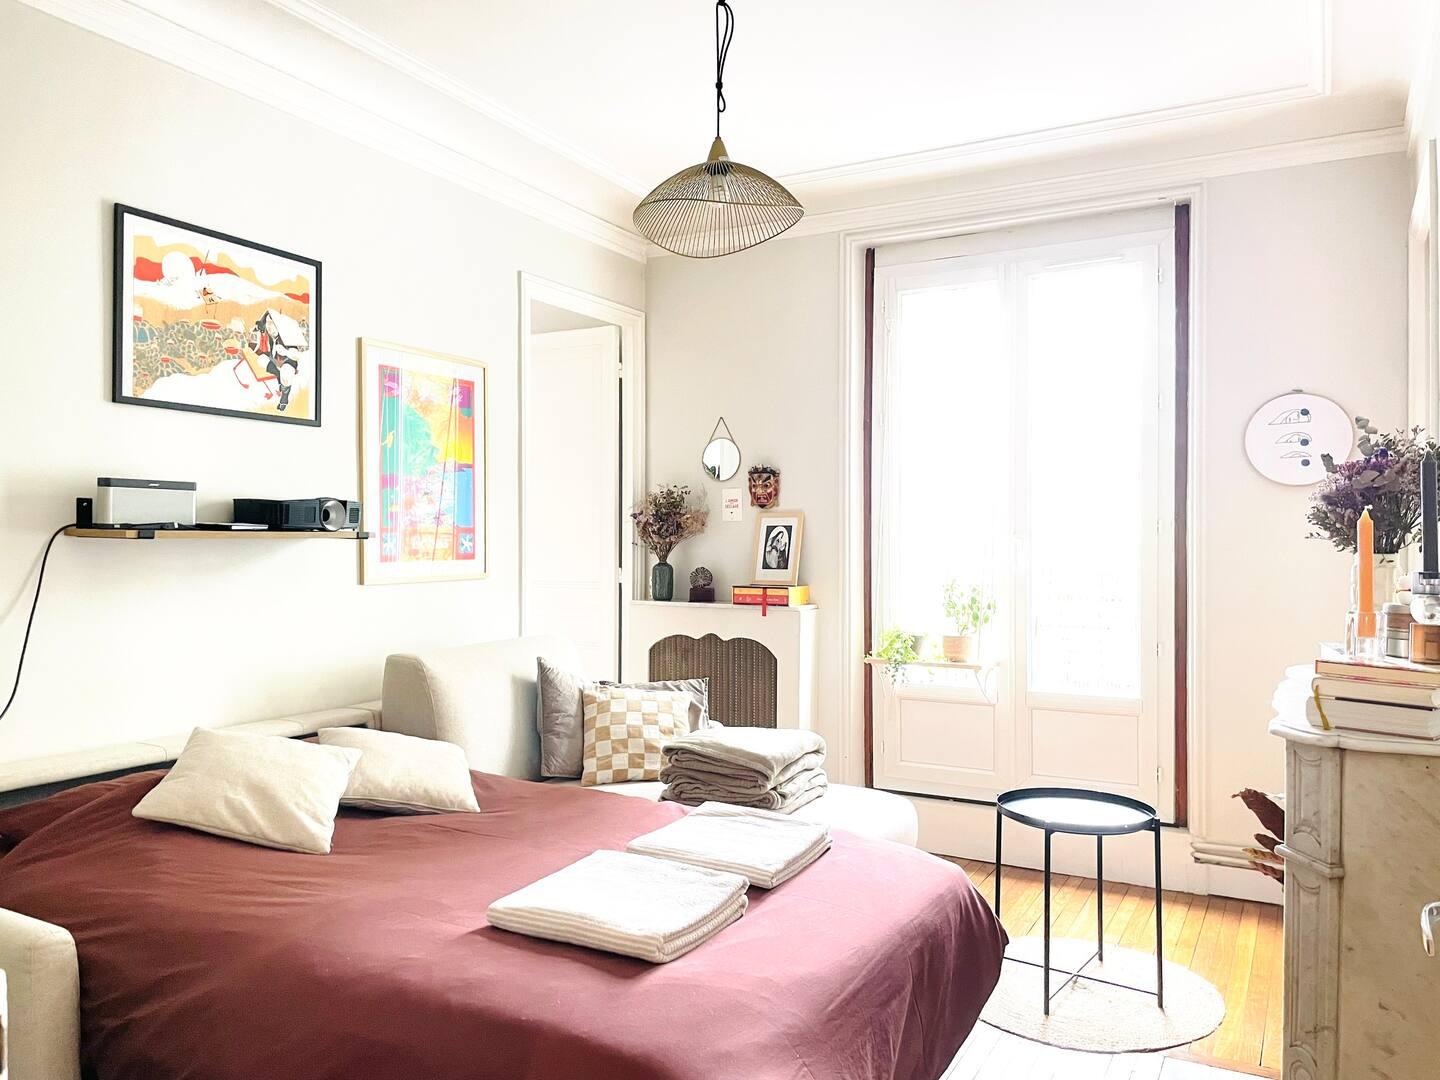 Hôte GreenGo: Appartement parisien typique - cosy & lumineux - Image 7